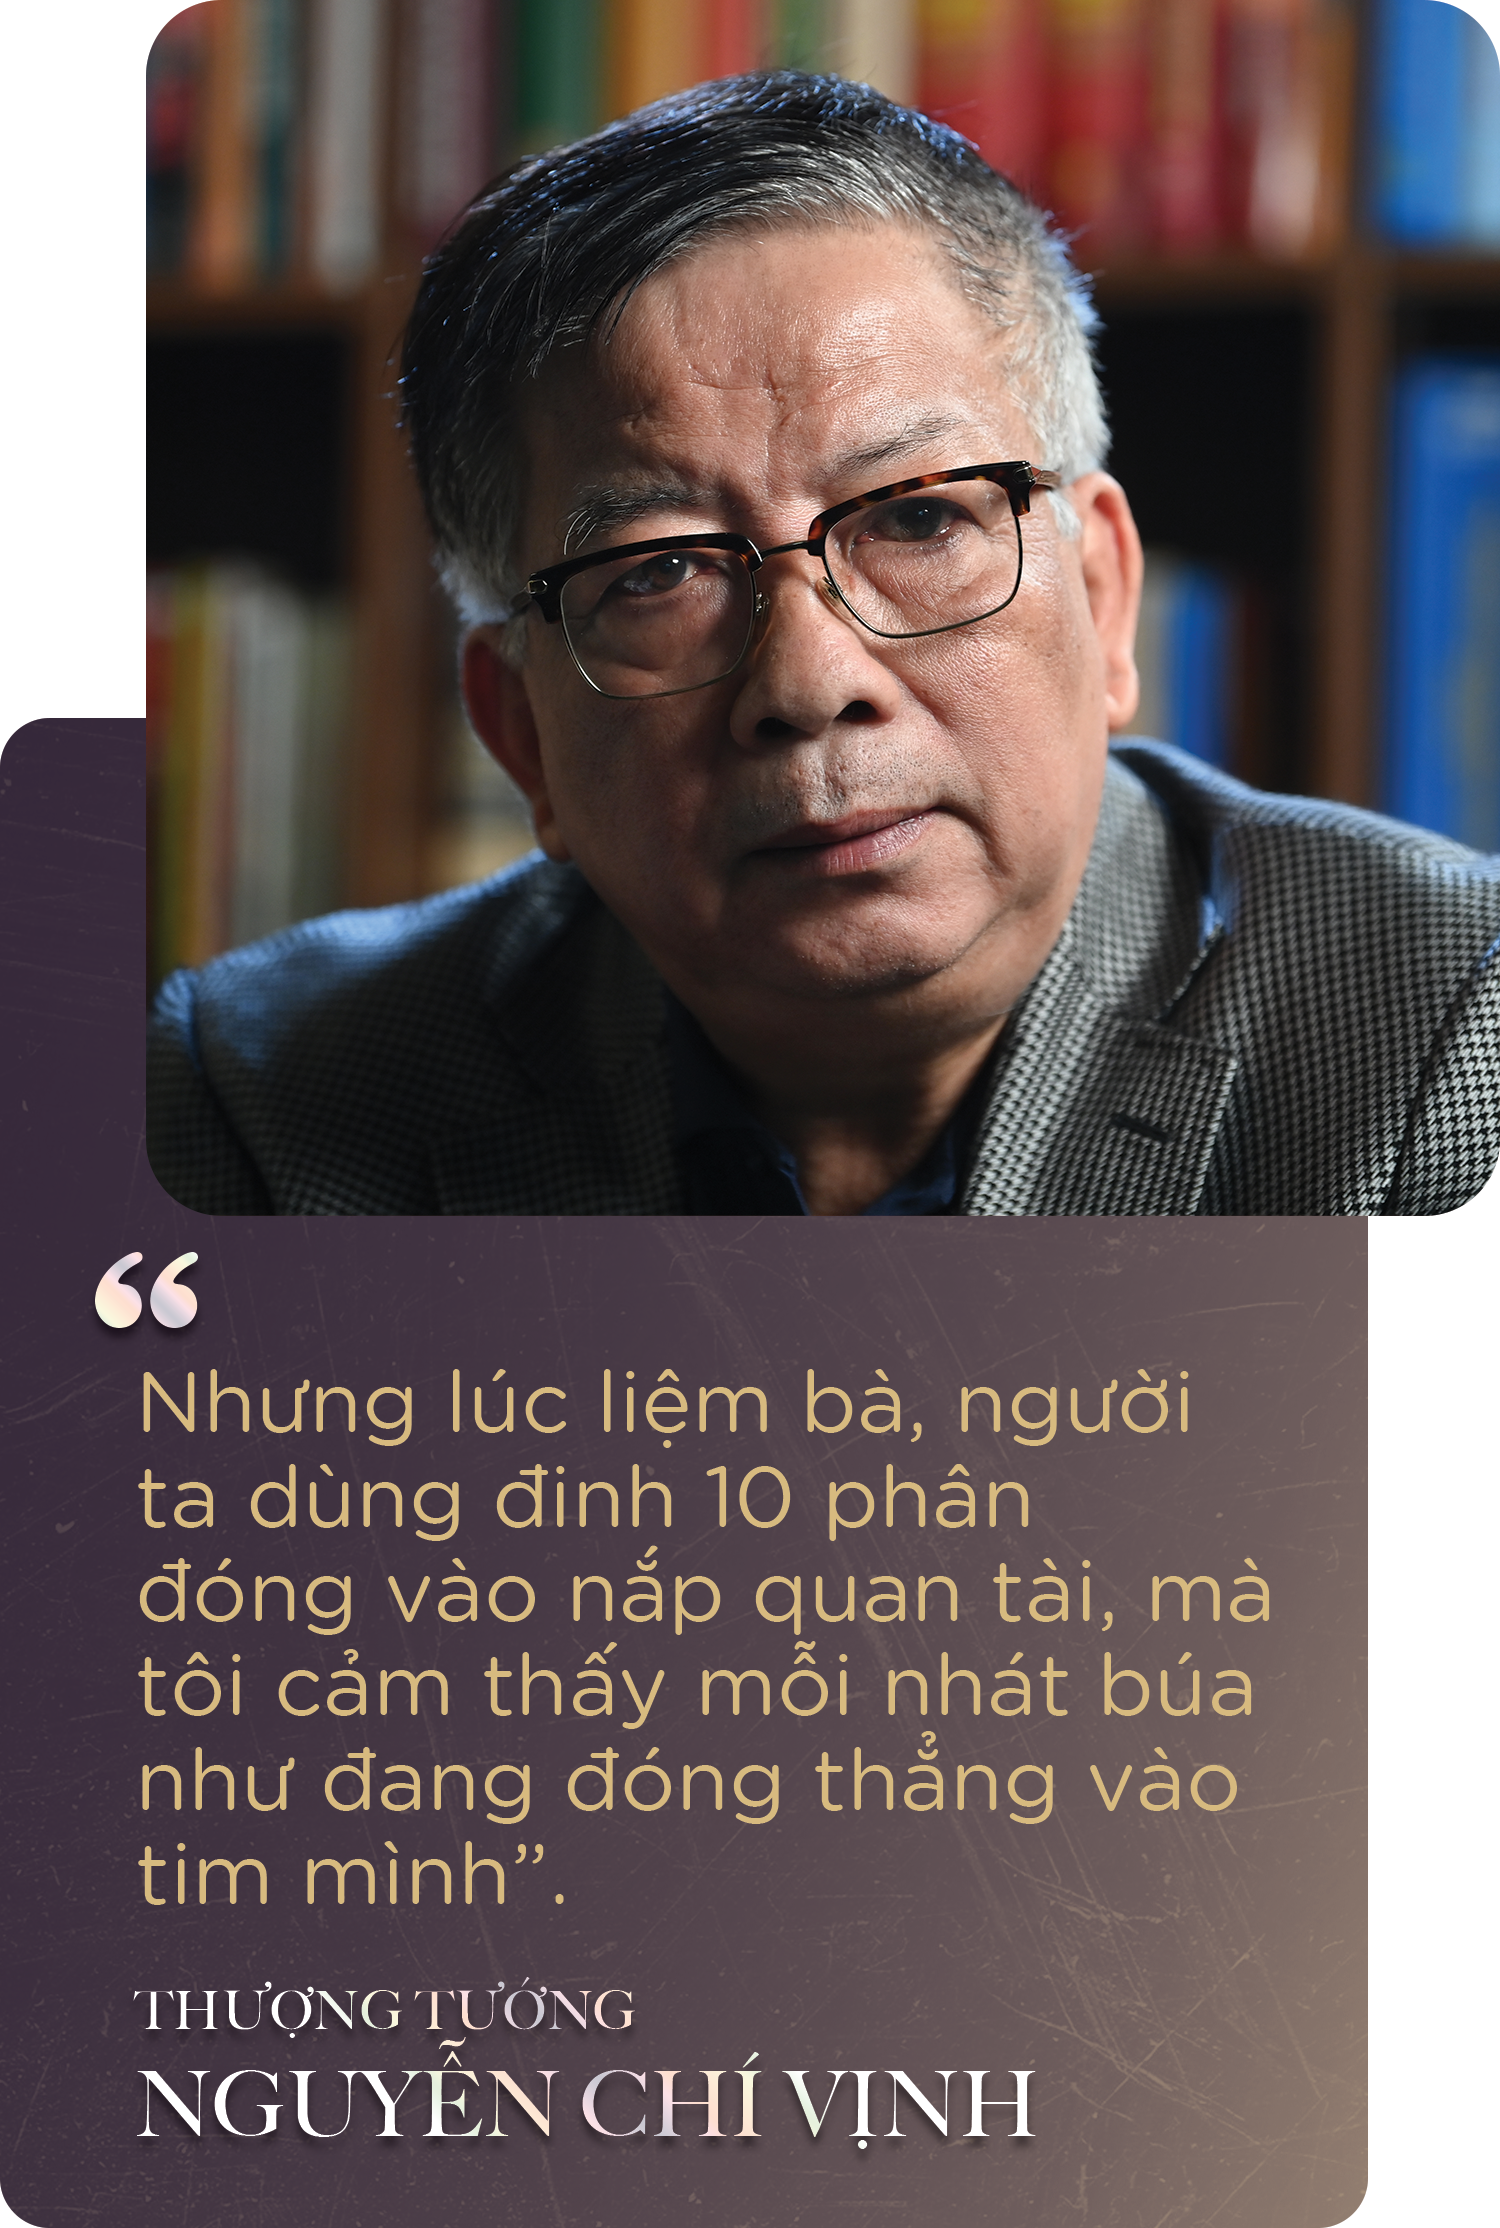 Lời hứa nuôi Nguyễn Chí Vịnh nên người của các Ủy viên Bộ Chính trị - 6